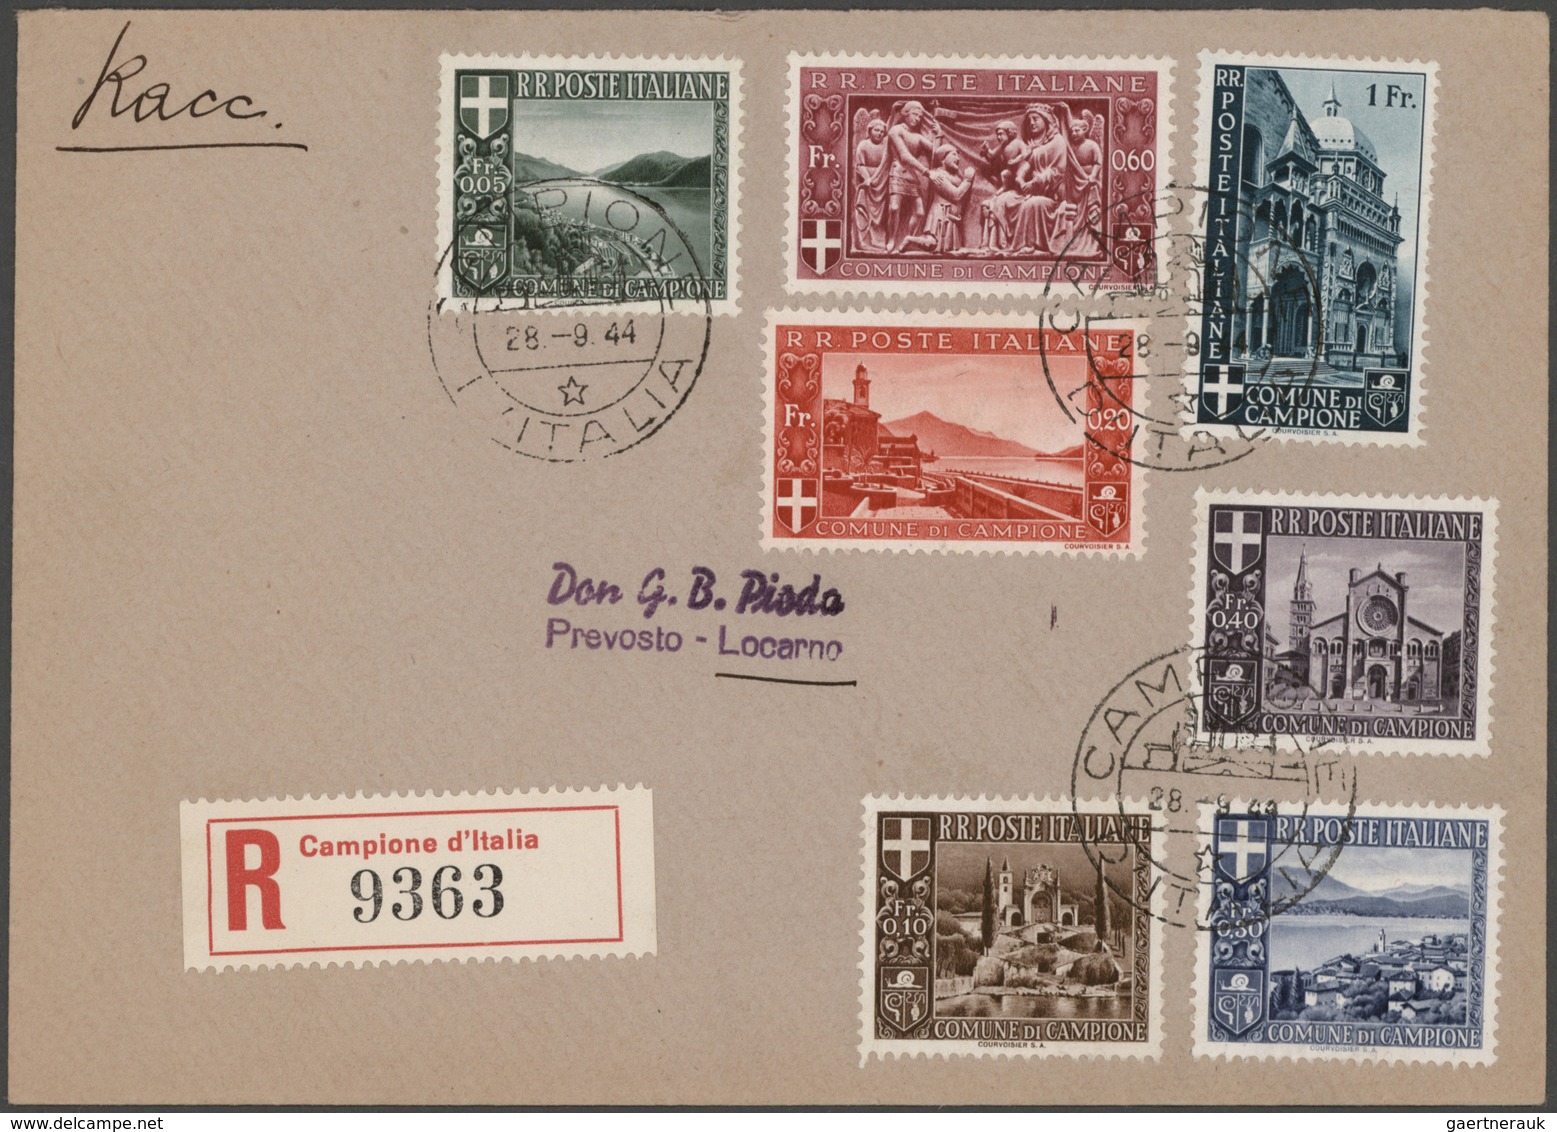 Schweiz: 1860/1990 (ca.), vielseitige Partie von ca. 370 Briefen, Karten und Gansachen, dabei zahlre